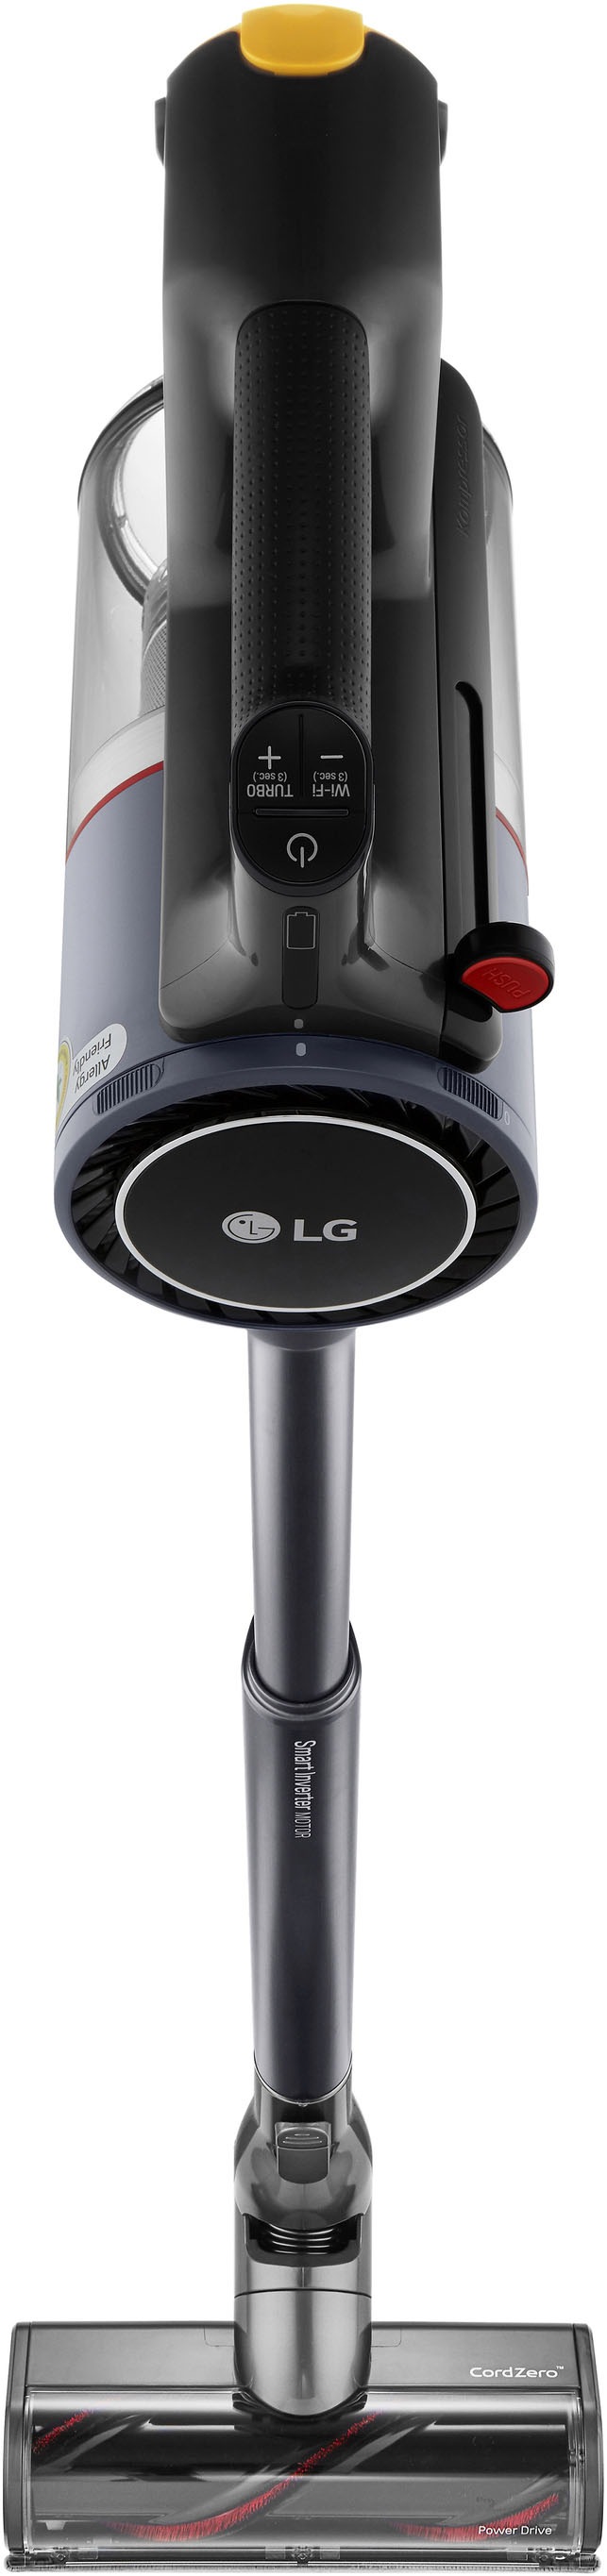 LG »A9K-PRO1G« OTTO Akku-Hand-und bei Stielstaubsauger